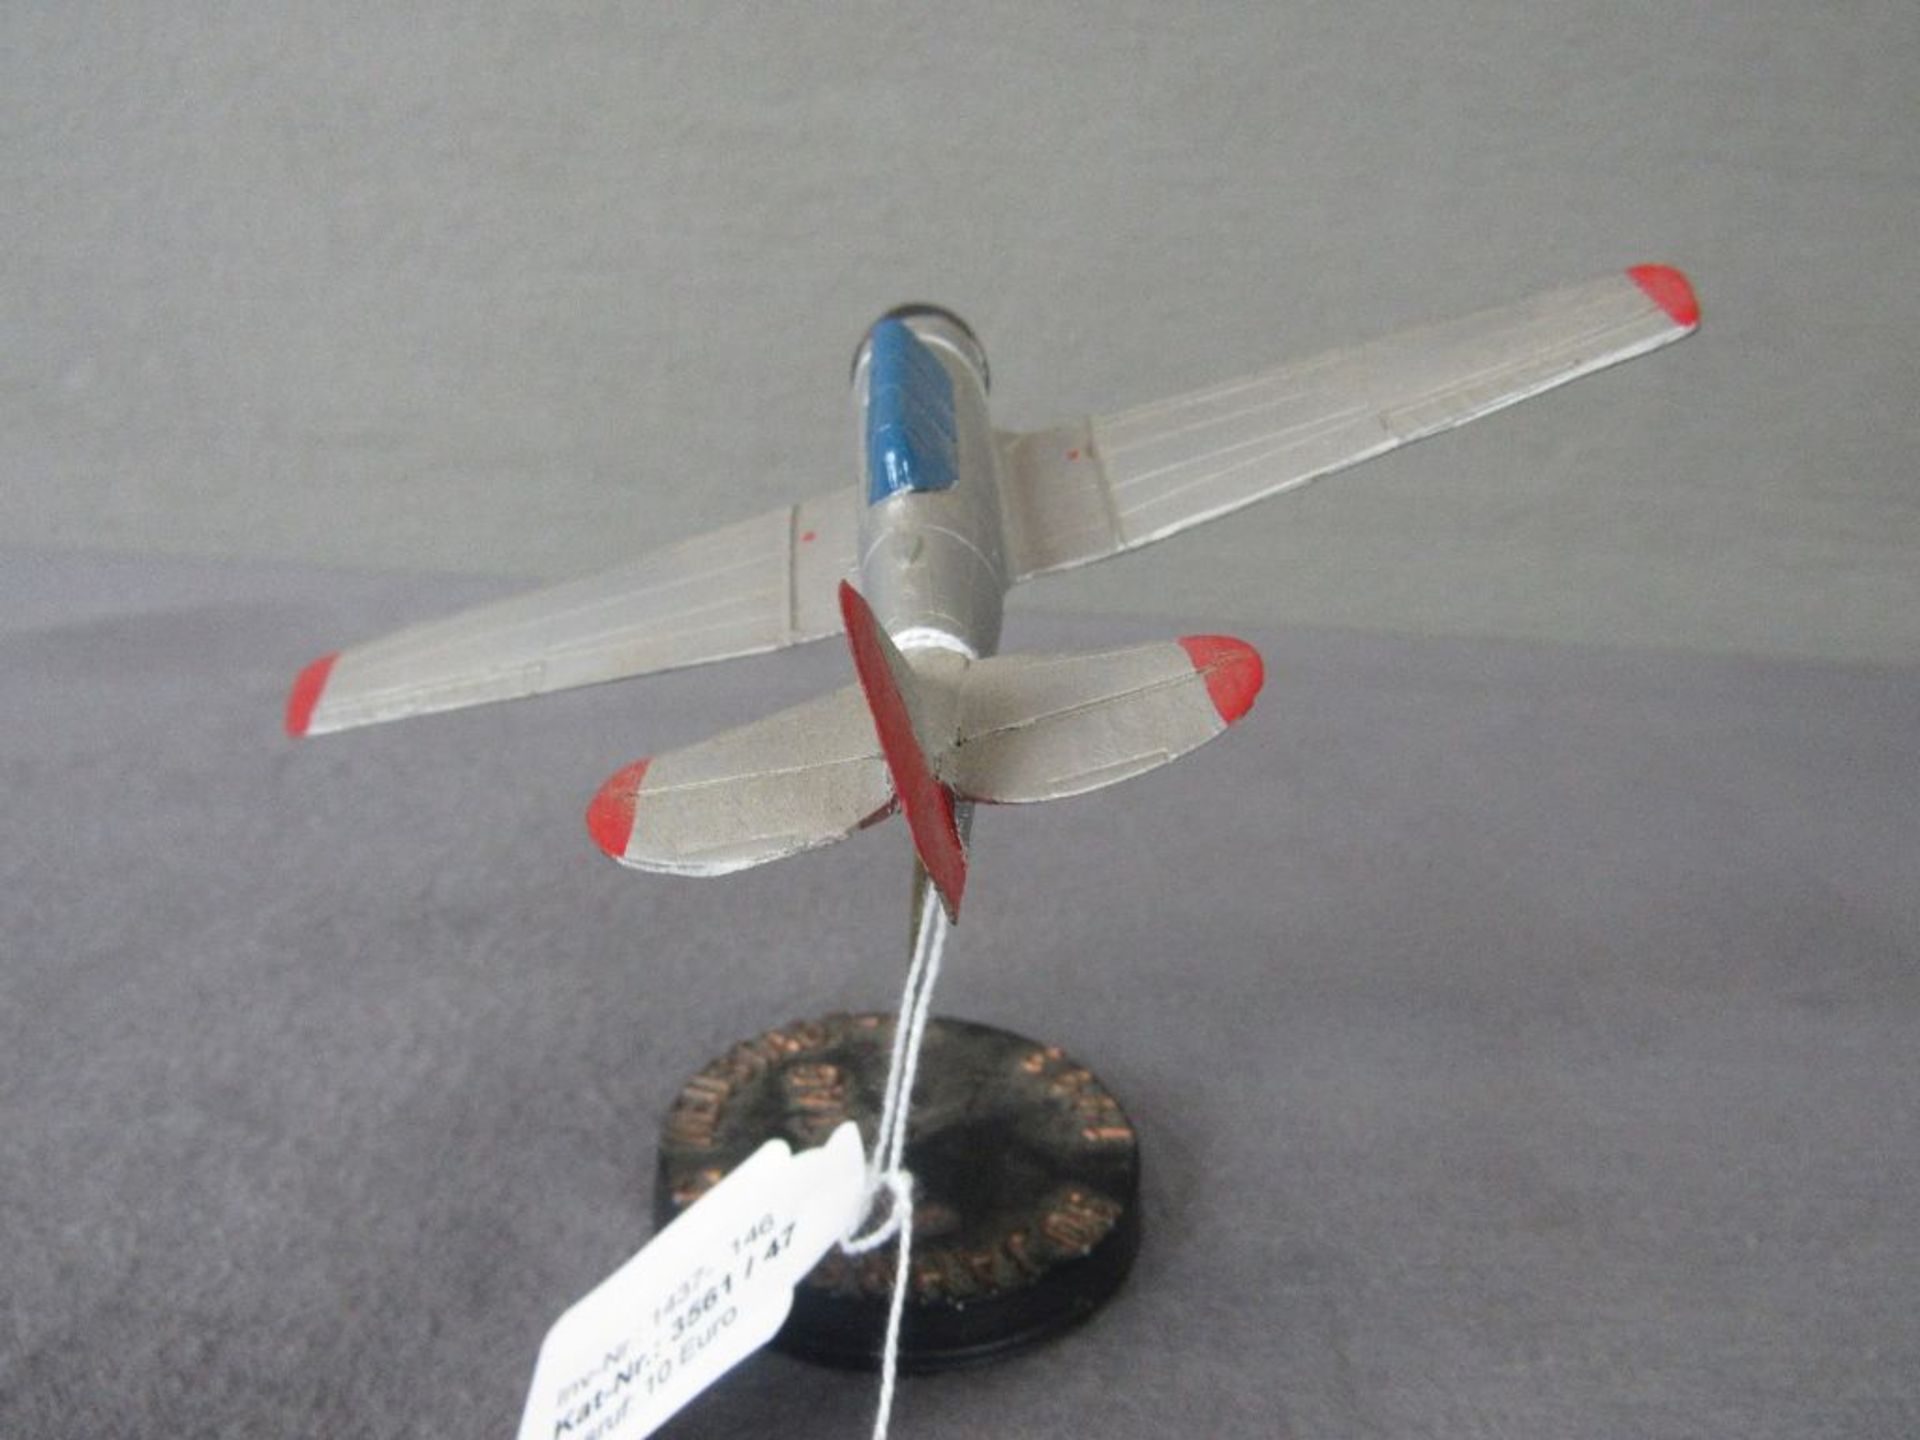 Schreibtischdekoration Modellflugzeug Durchmesser 18,5cm - Image 4 of 4